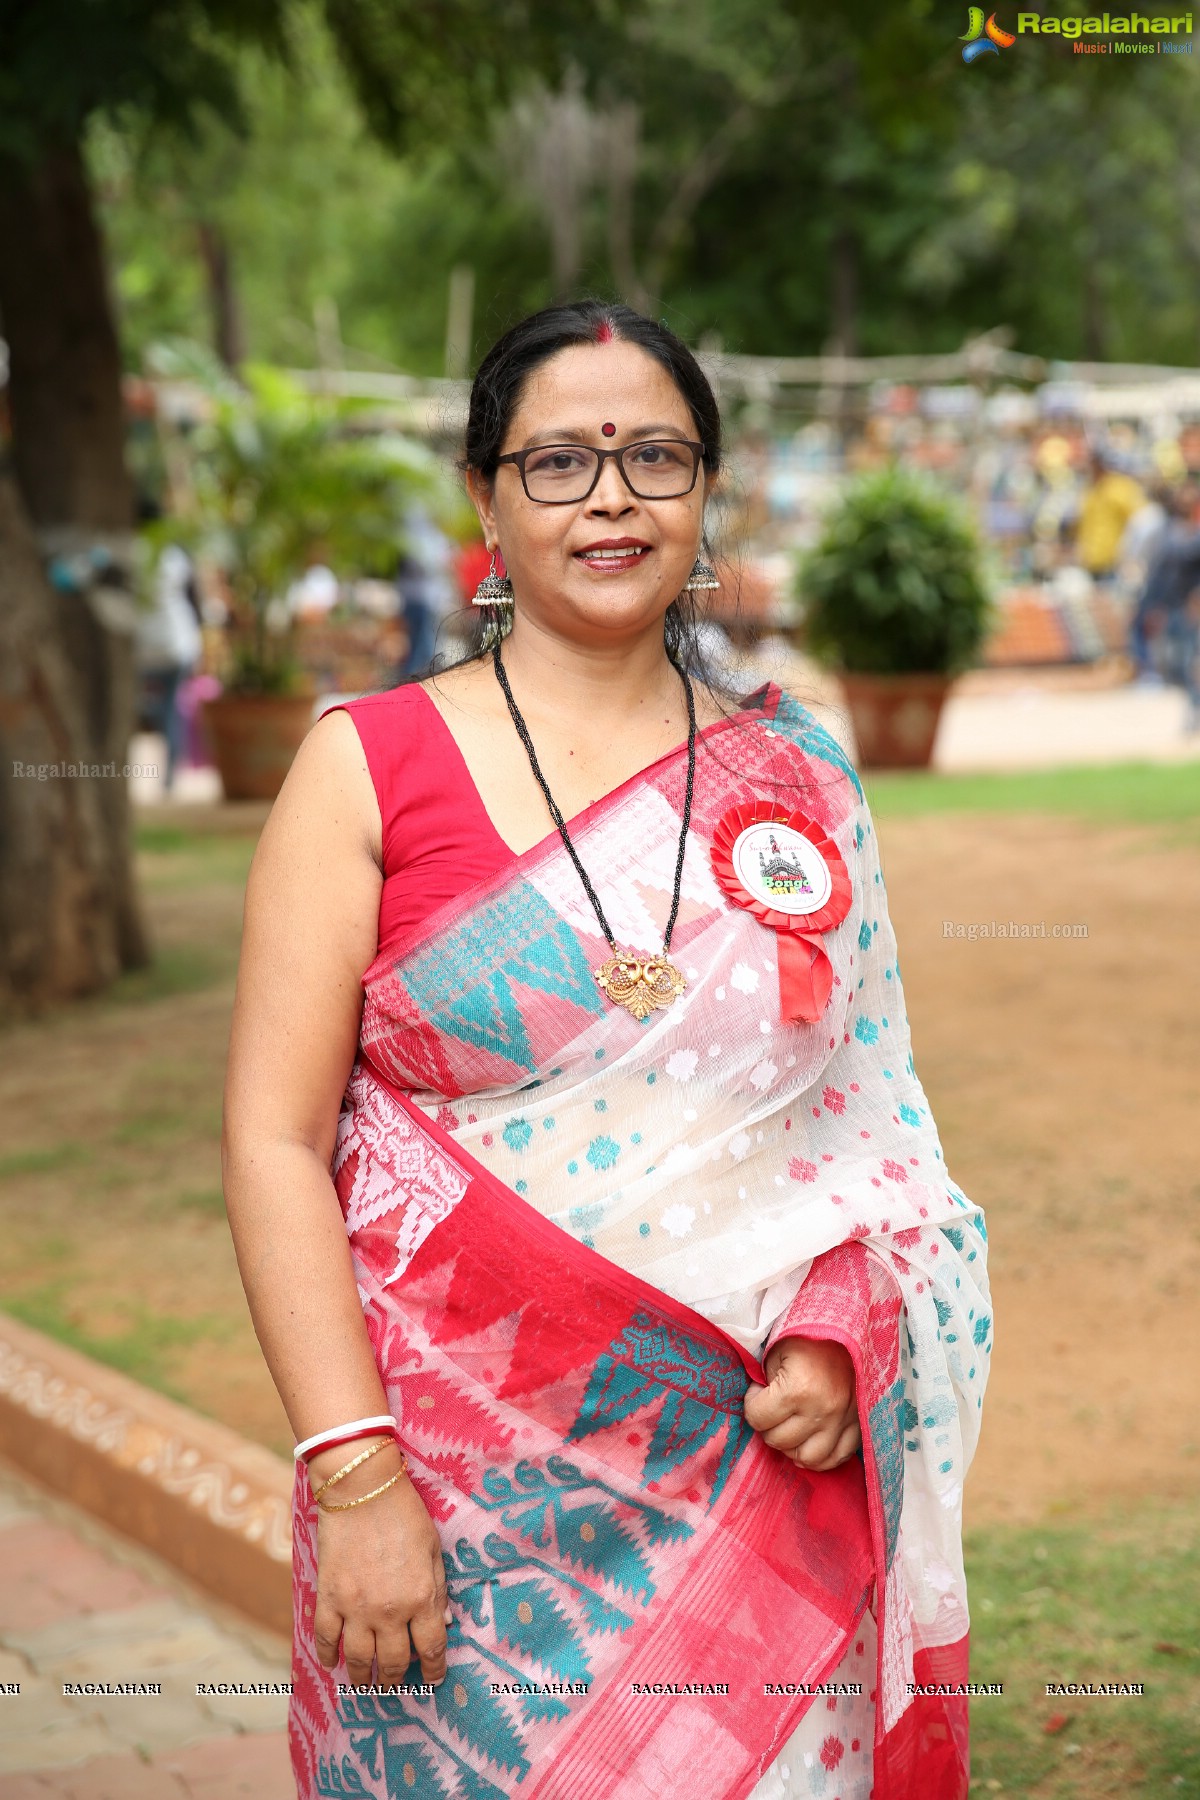 Hyderabad Bongo Mela 2019 at Shilparamam